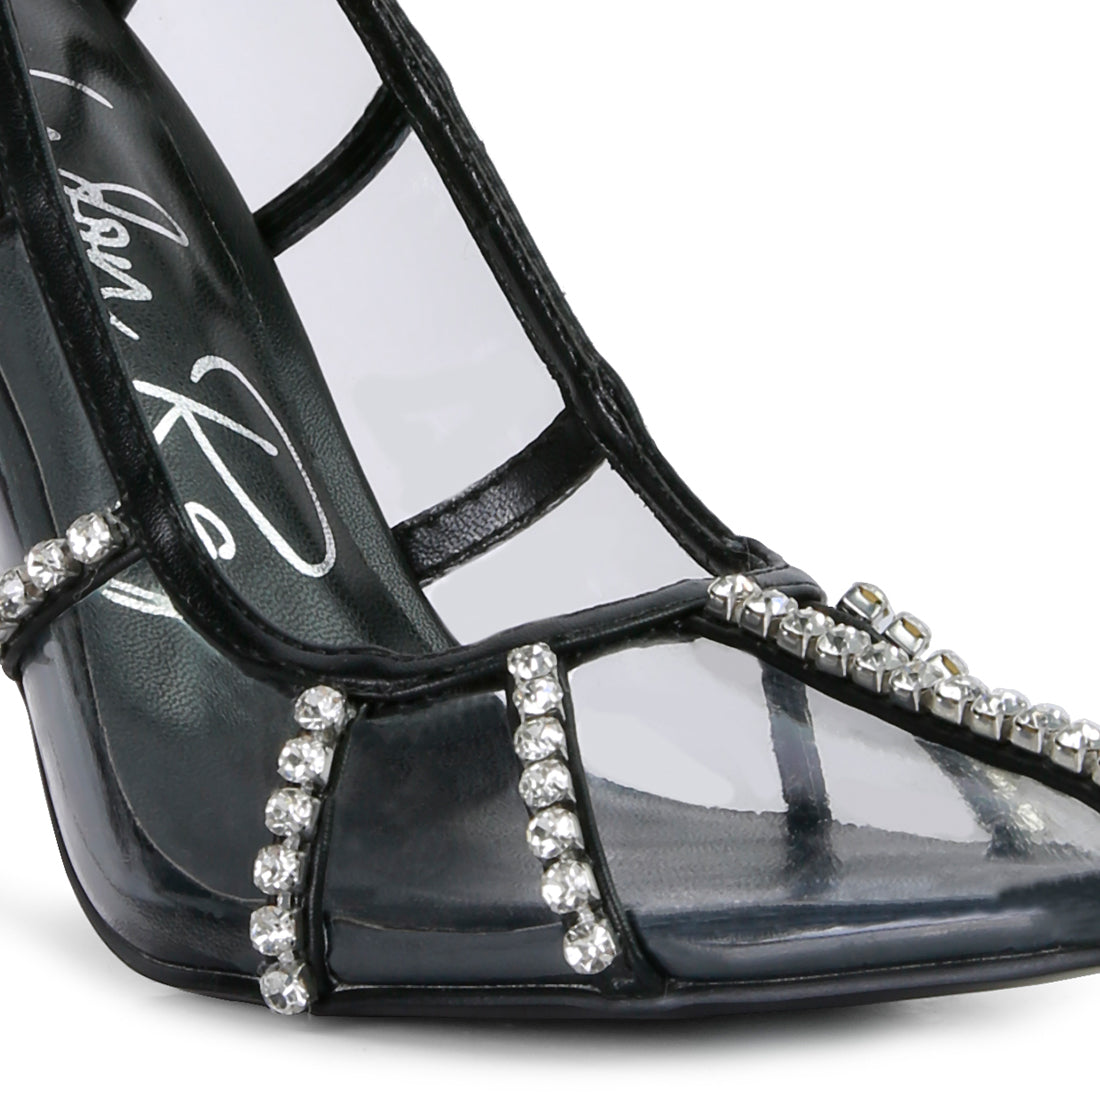 diamante clear high heel cage pumps#color_black